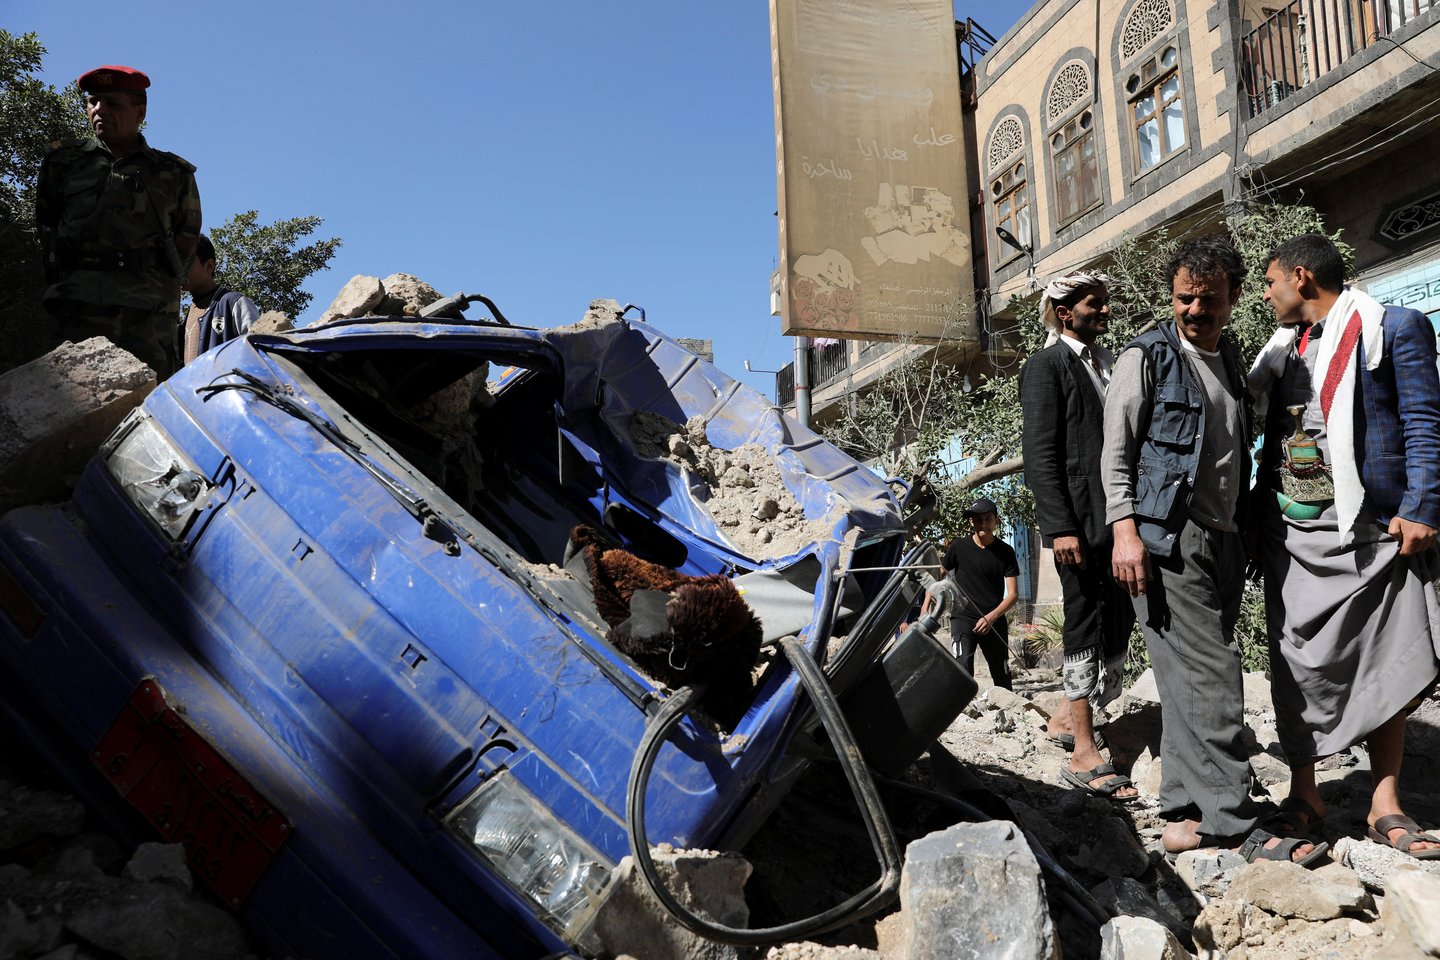 Saudo Arabijai apsikeitus ugnimi su Jemeno sukilėliais žuvo penki žmonės.<br>Reuters/Scanpix nuotr.